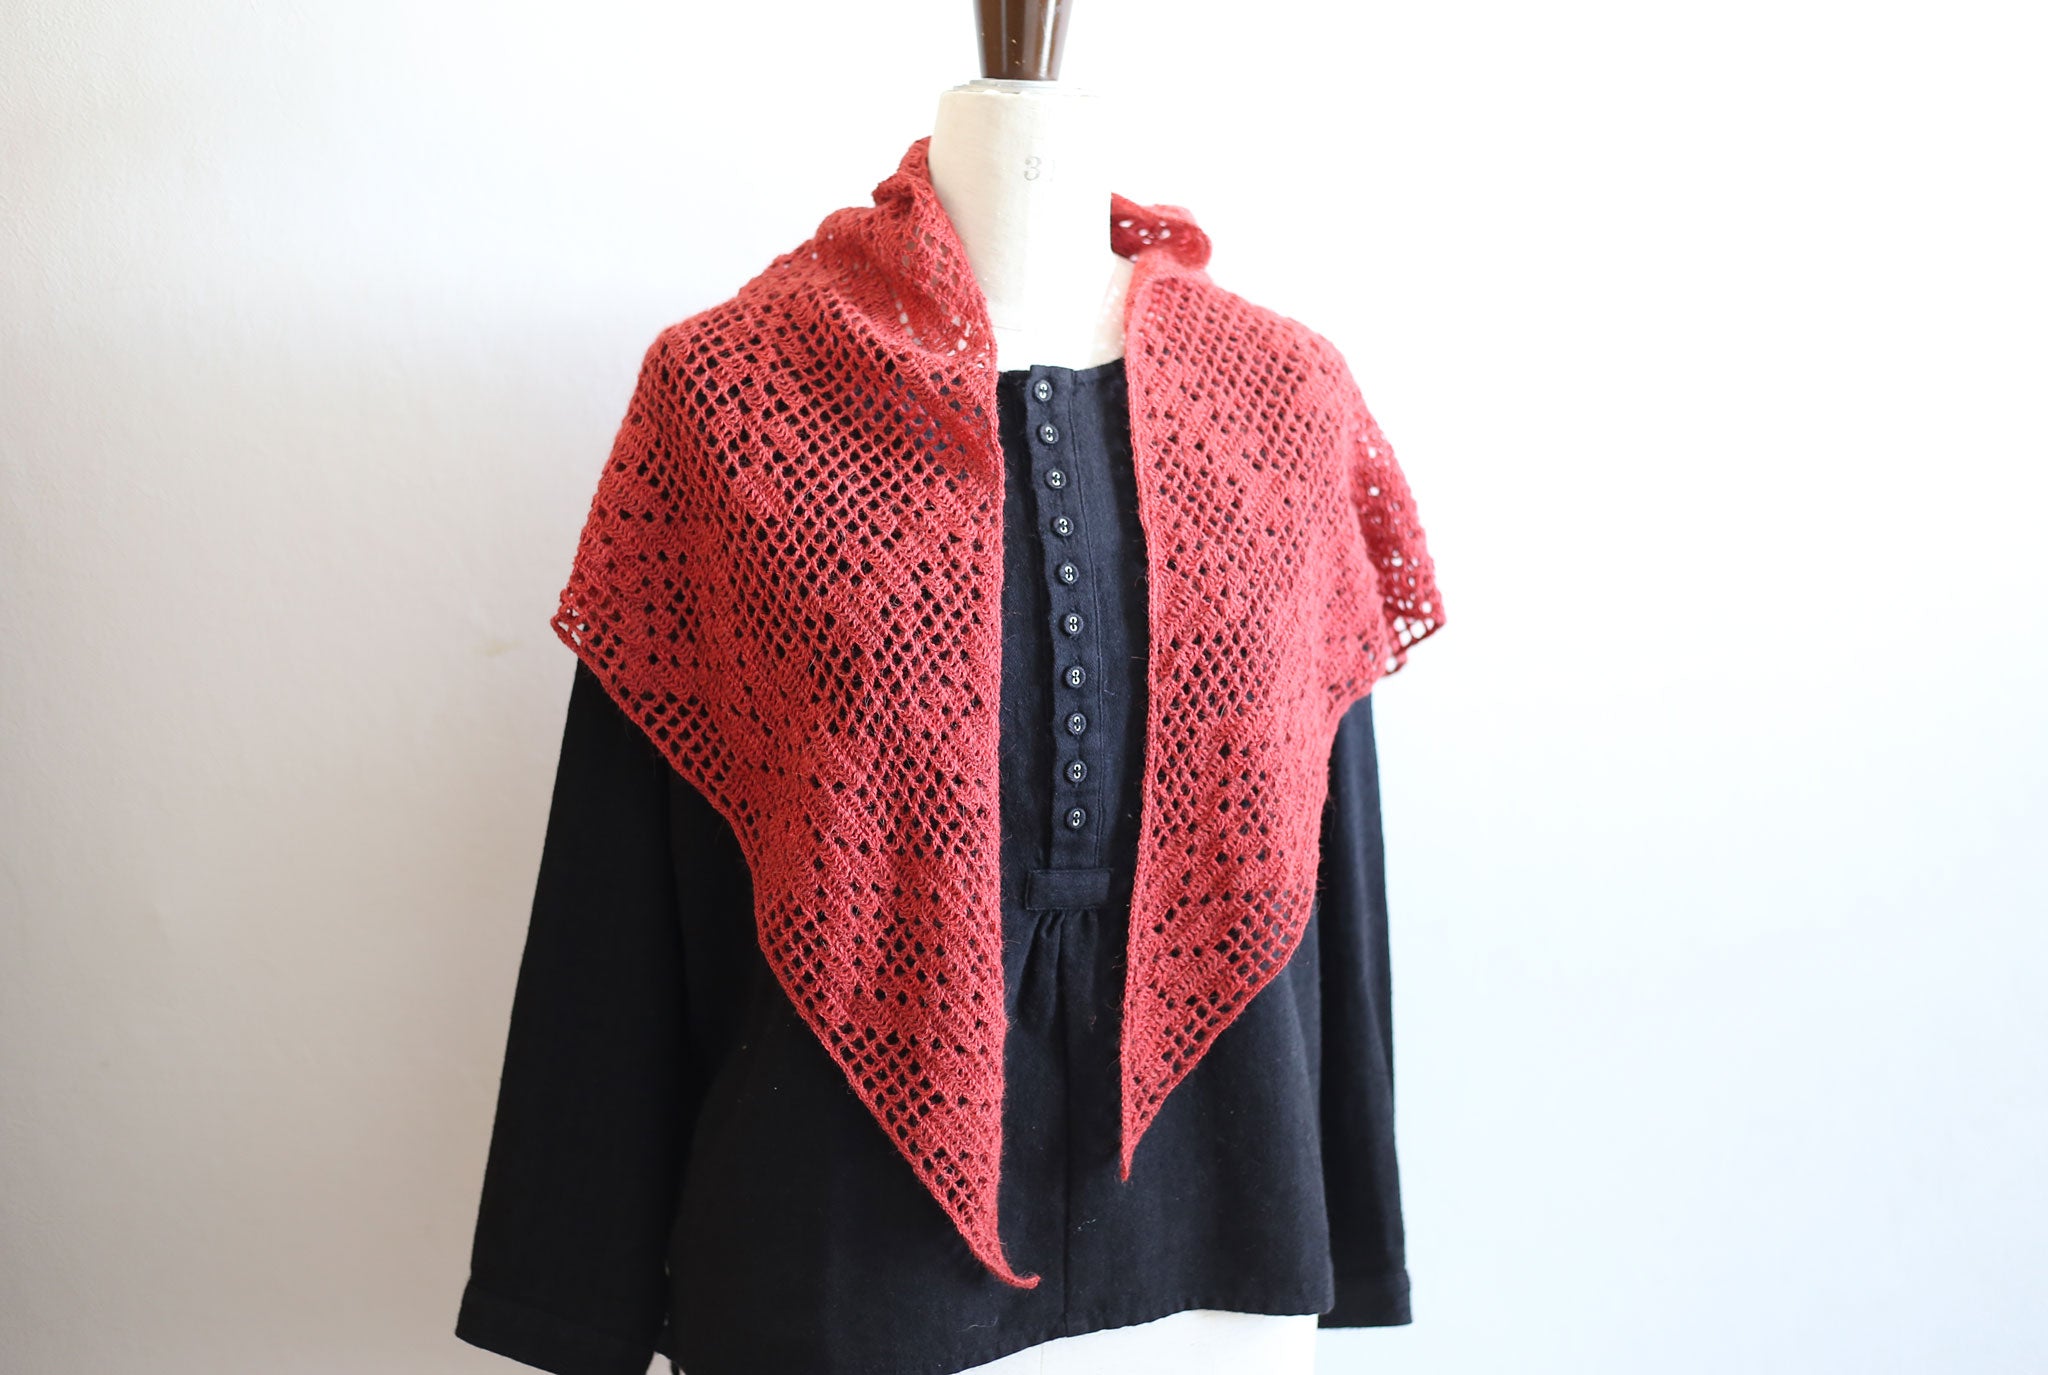 "Two Variations of Filet Crochet Shawls" crochet pattern